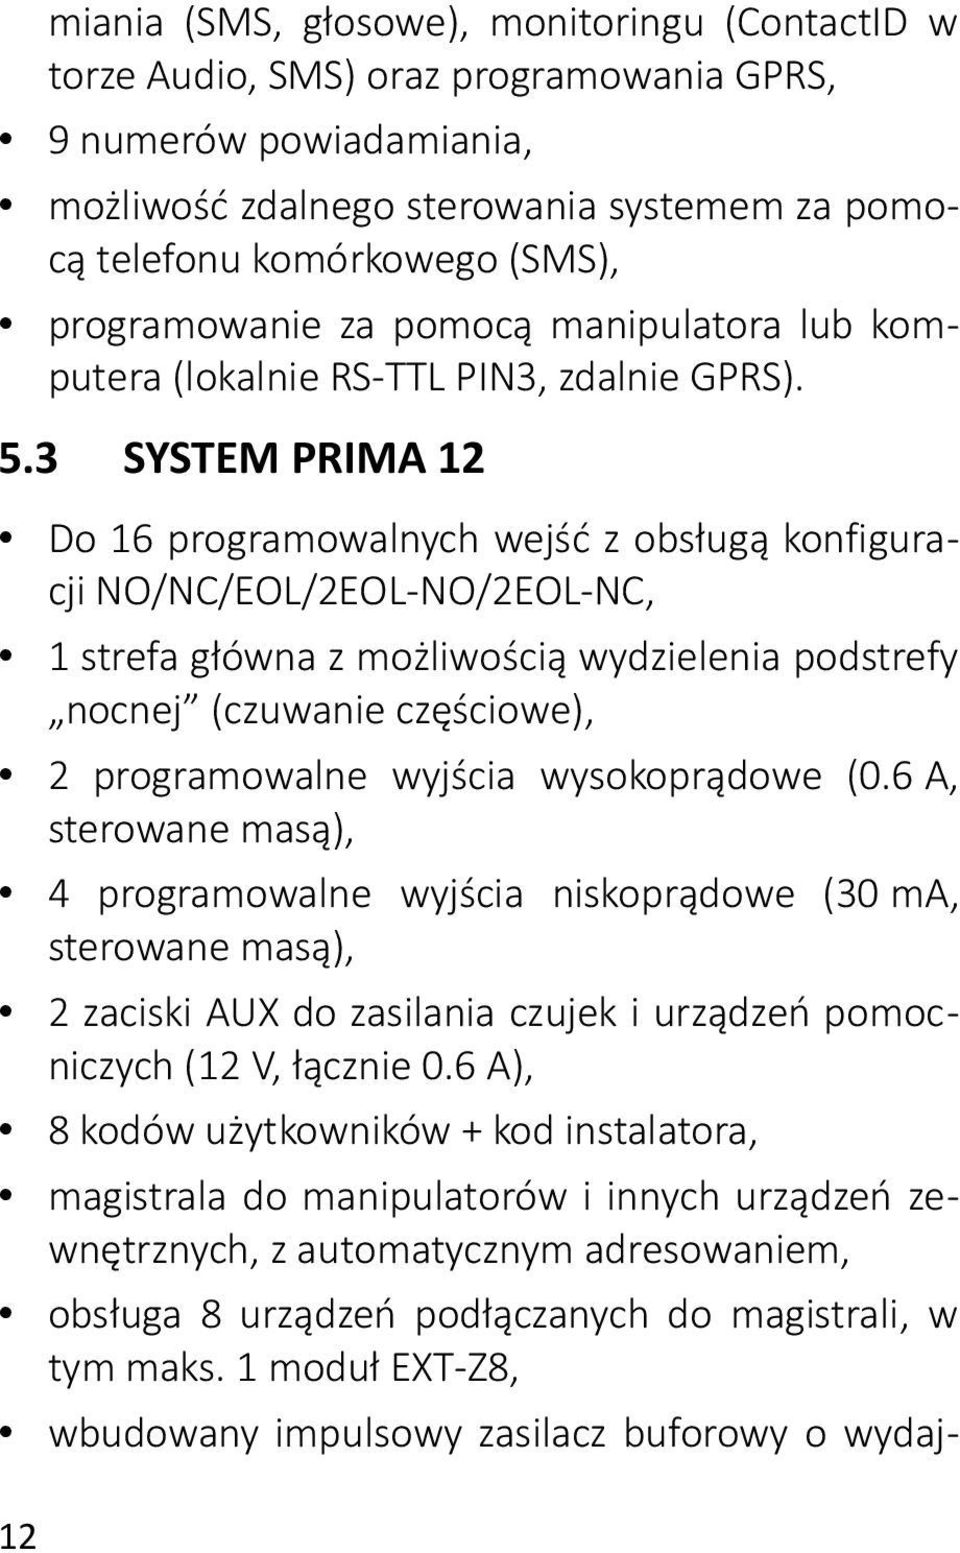 3 SYSTEM PRIMA 12 Do 16 programowalnych wejść z obsługą konfiguracji NO/NC/EOL/2EOL-NO/2EOL-NC, 1 strefa główna z możliwością wydzielenia podstrefy nocnej (czuwanie częściowe), 2 programowalne